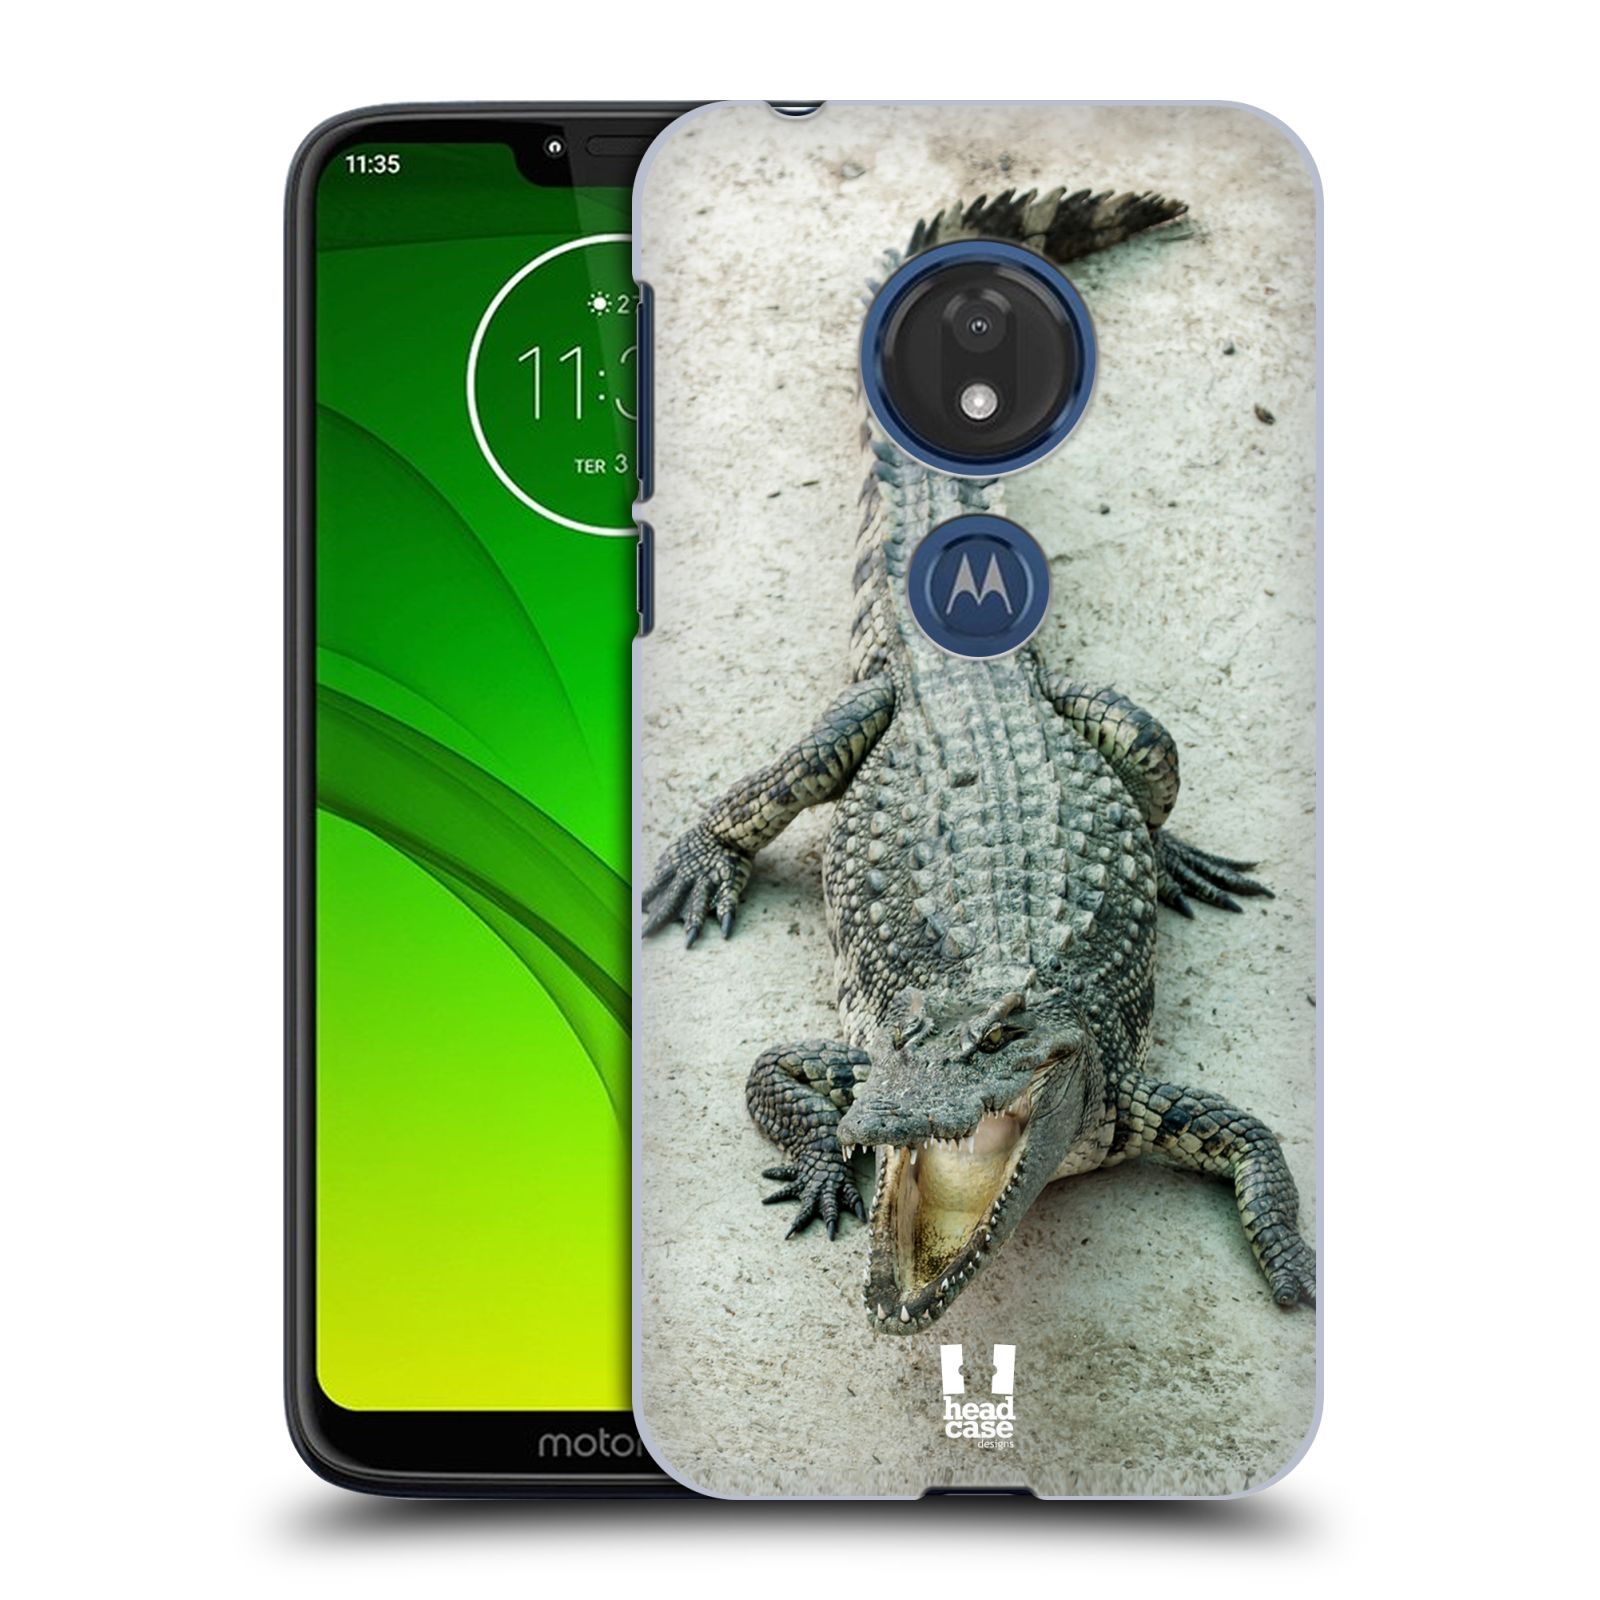 Pouzdro na mobil Motorola Moto G7 Play vzor Divočina, Divoký život a zvířata foto KROKODÝL, KAJMAN